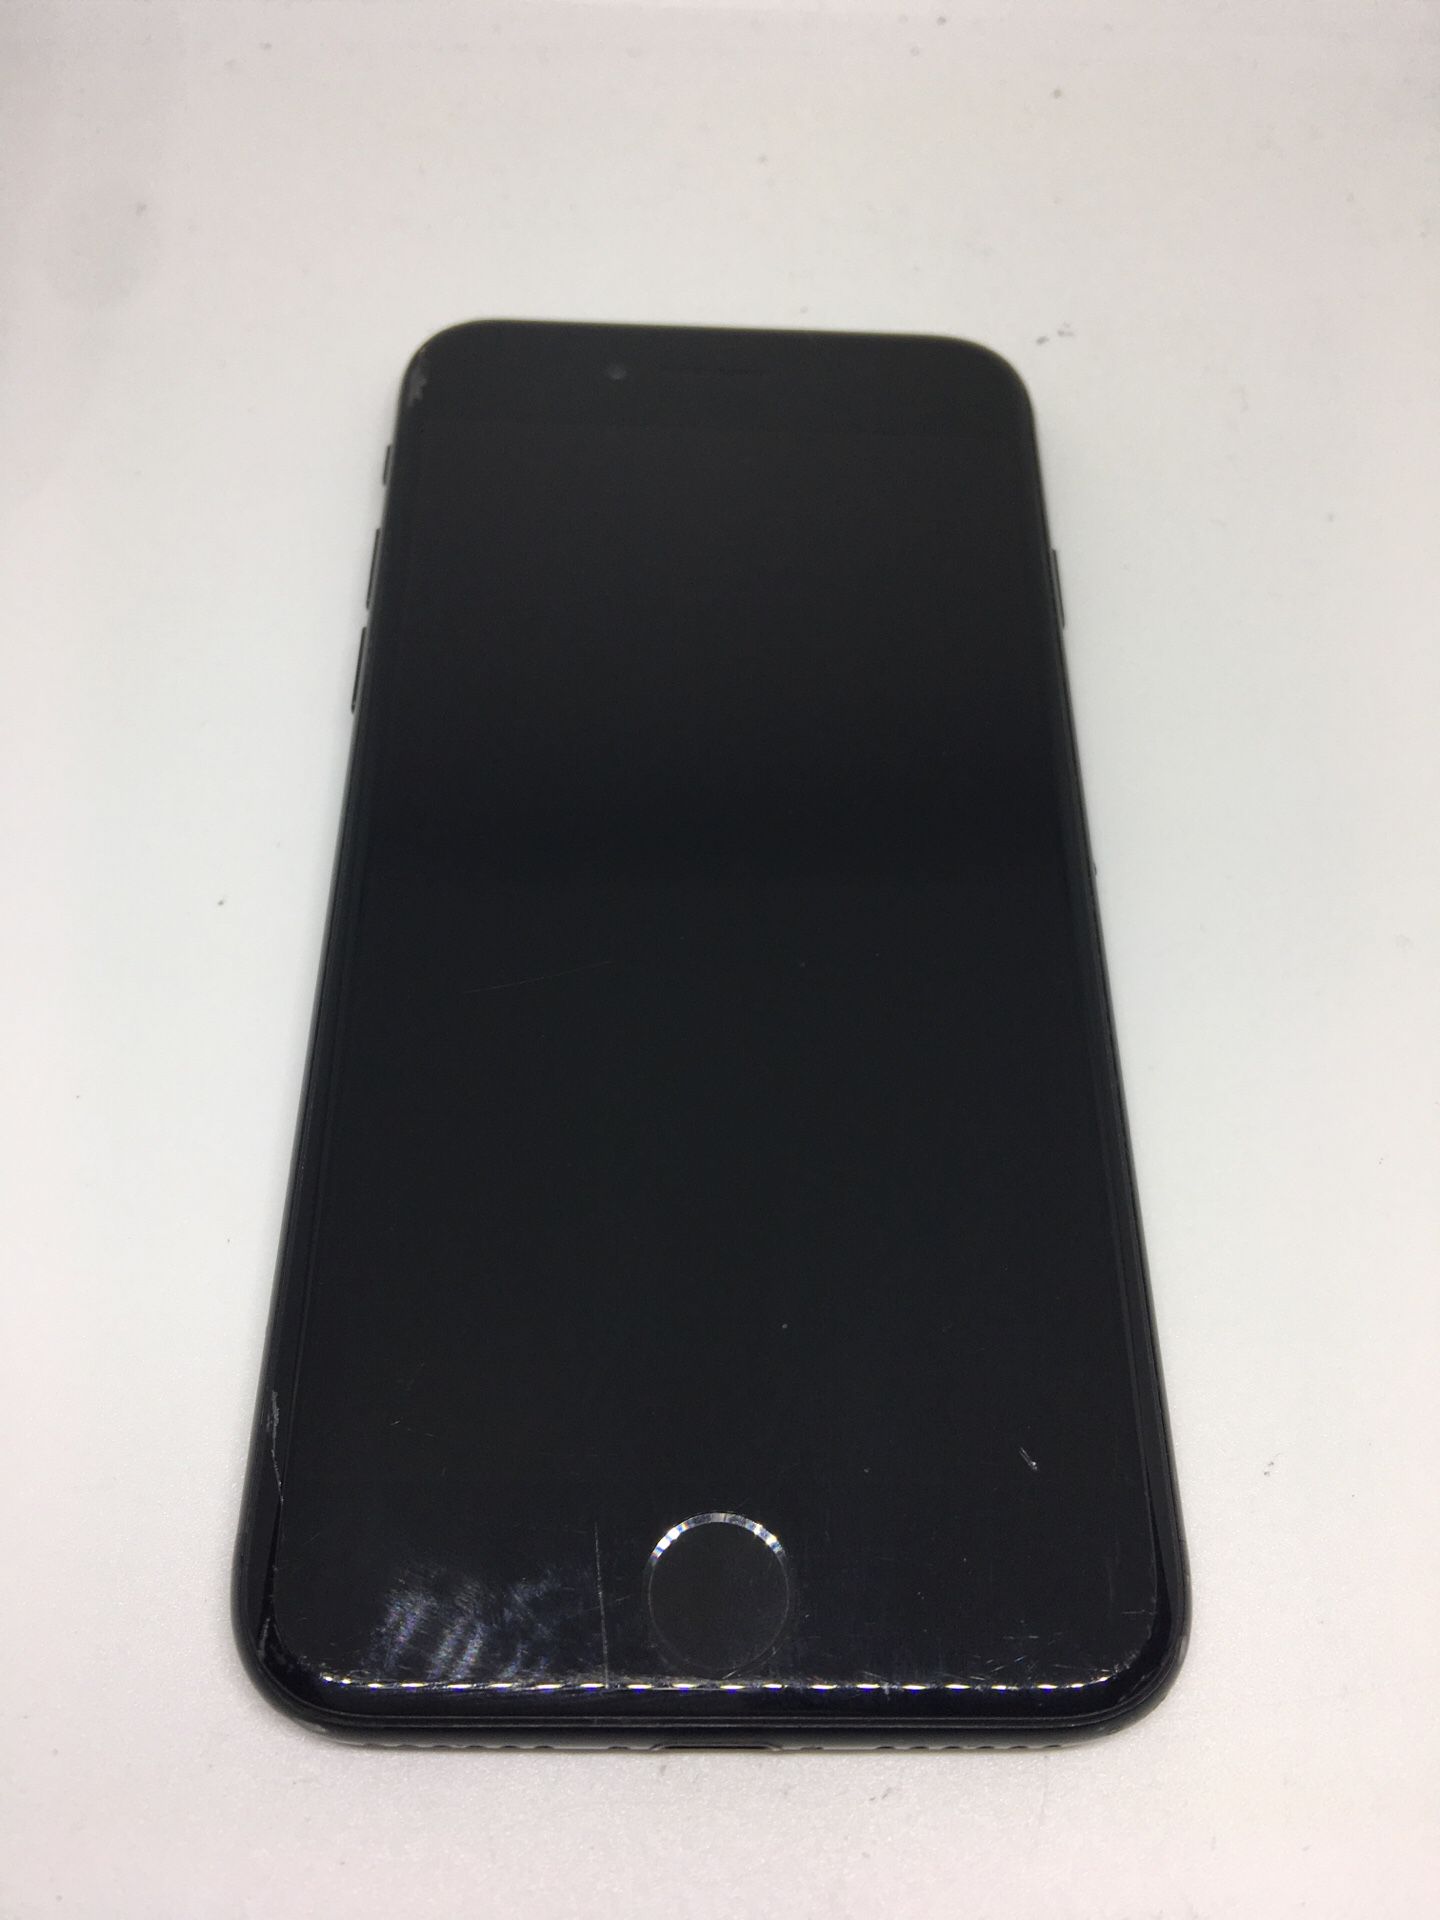 Apple iPhone 7 32gb Black Unlocked